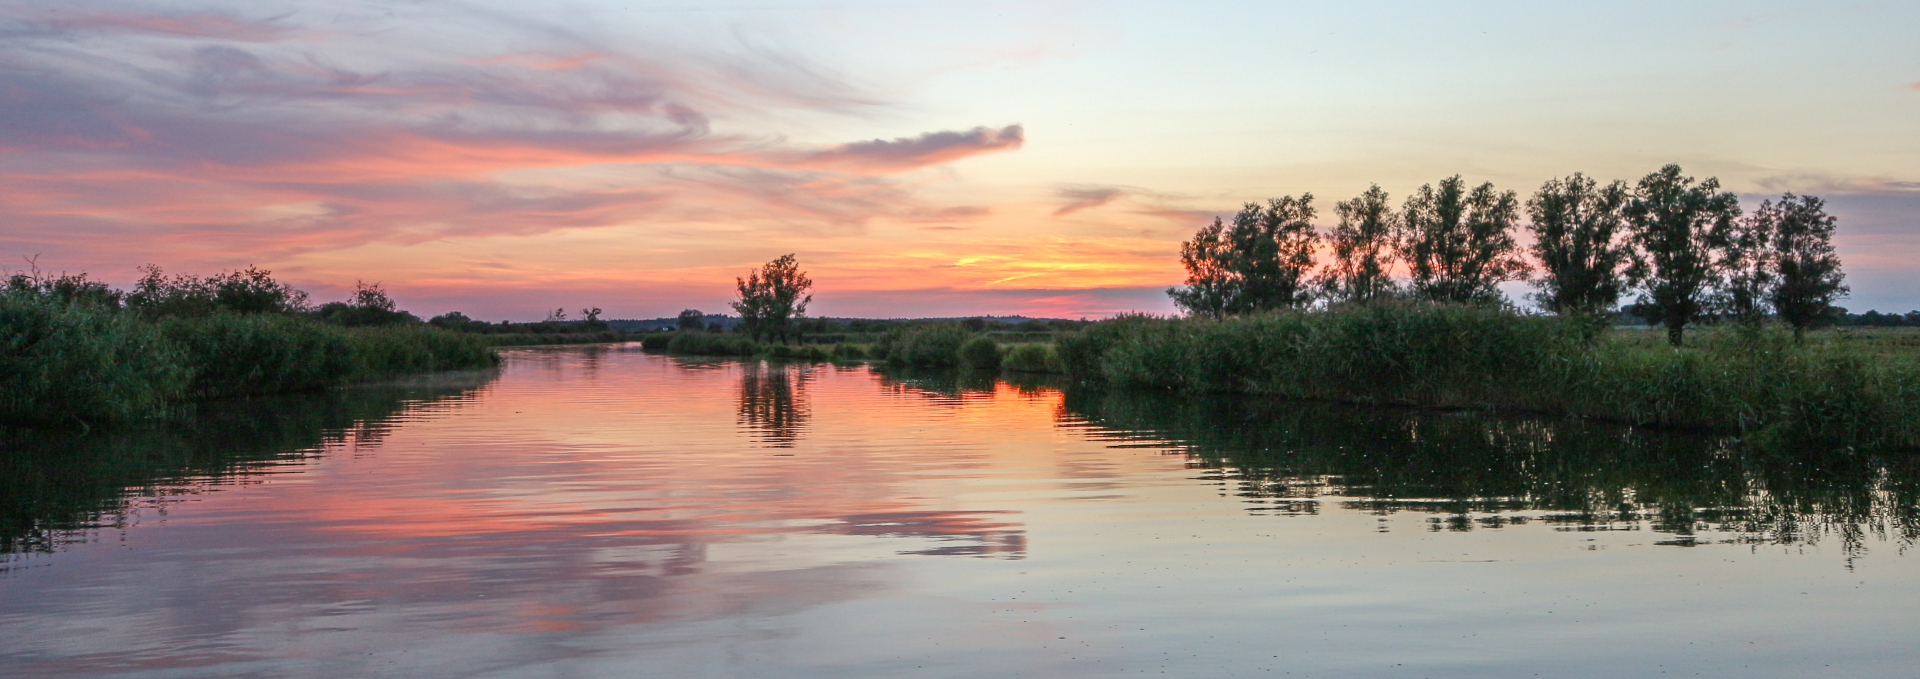 Unterwegs mit dem Hausboot zum Sonnenuntergang auf der Peene, © TMV/Witzel